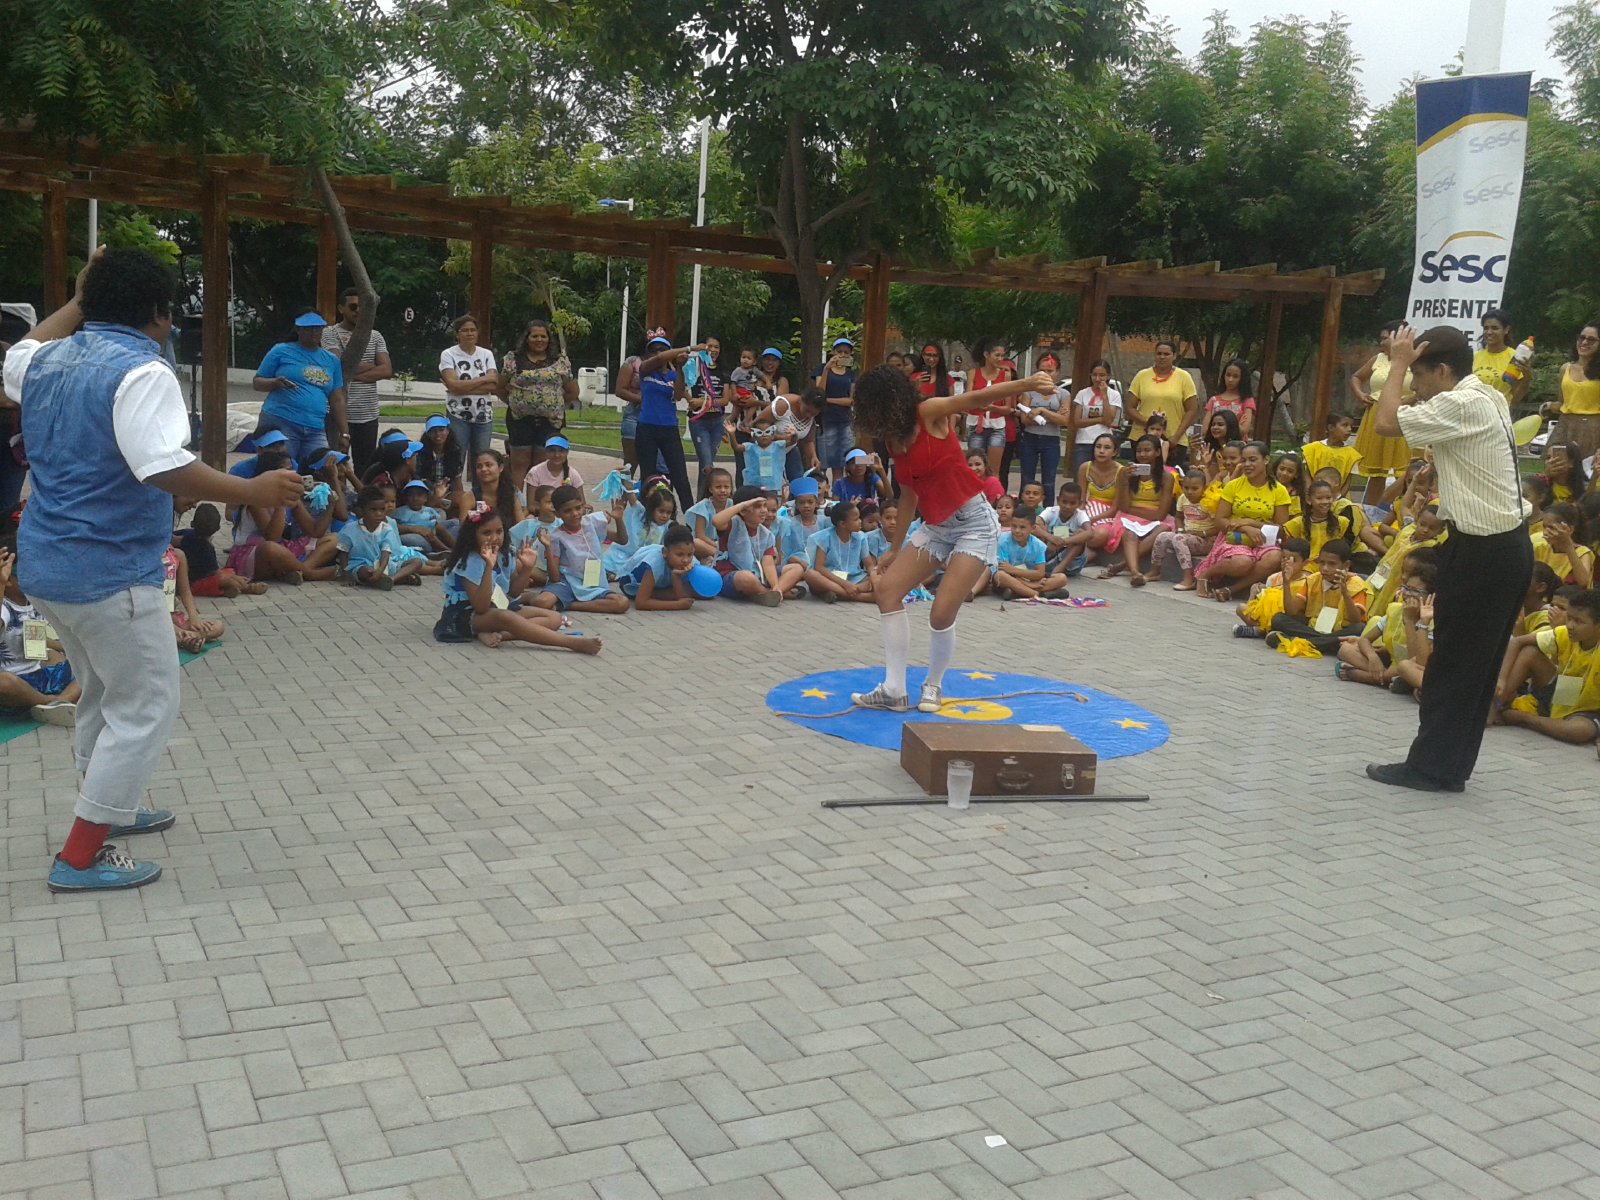 Gincana Infantil encerra “Semana Internacional do Brincar” no Campus Caxias